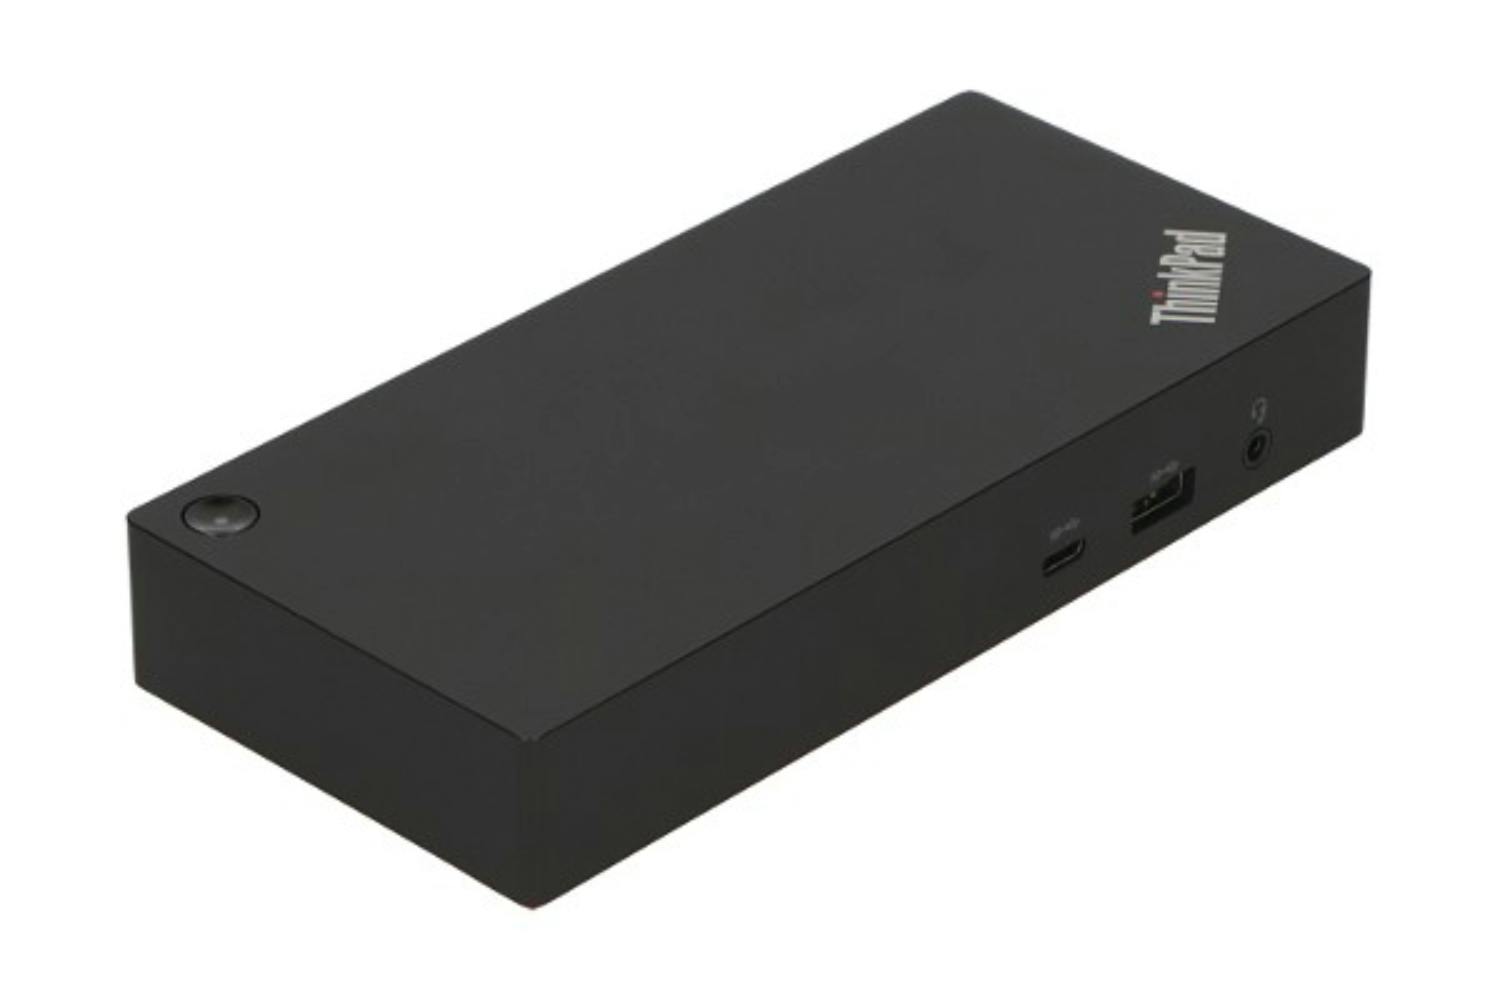 Lenovo 40AY0090UK ThinkPad Universal USB-C Dock